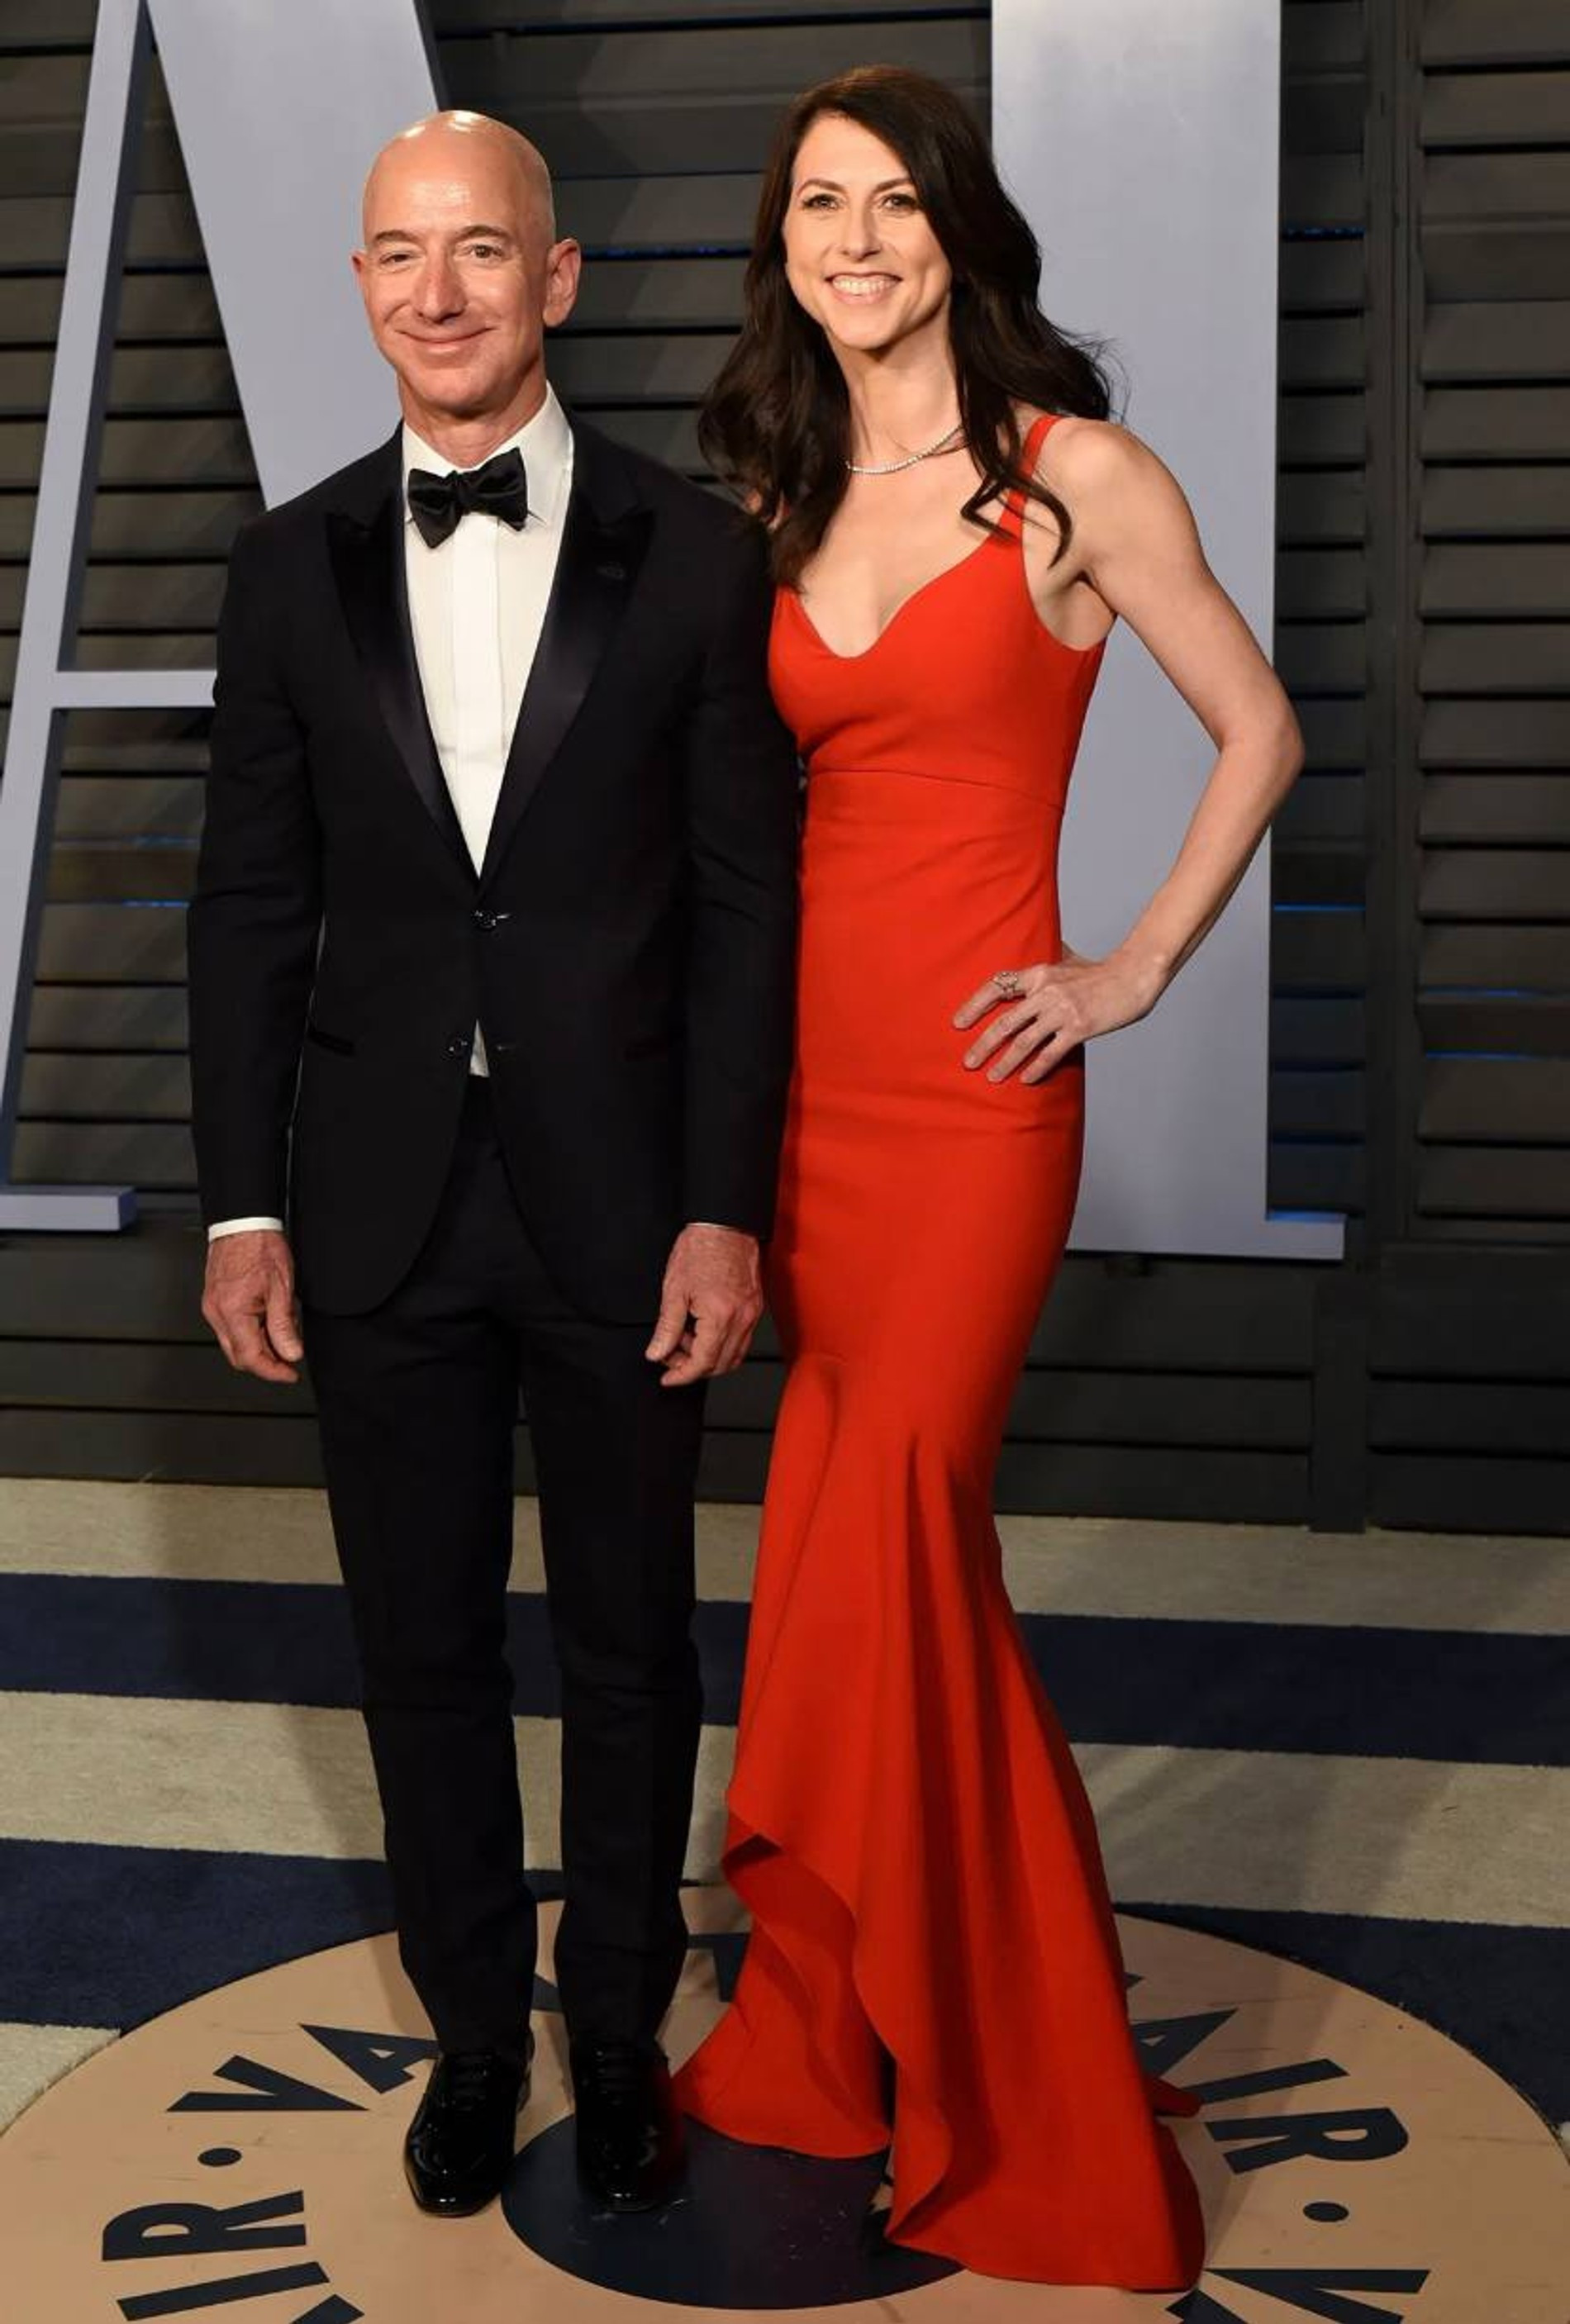 Джефф Безос с бывшей супругой Маккензи Таттл
Фото: Getty Images